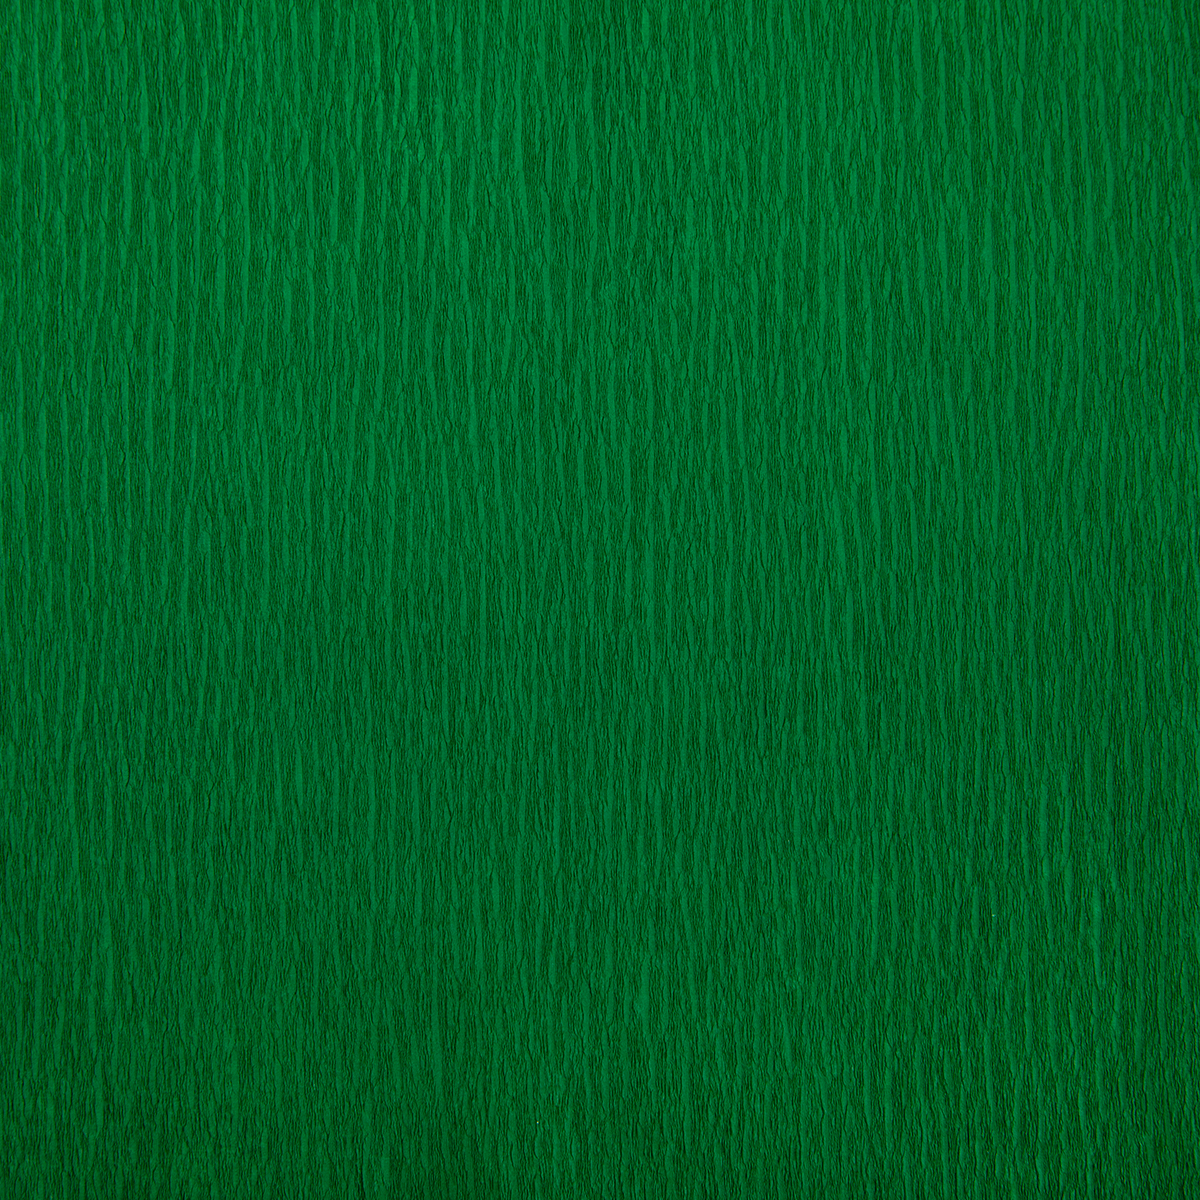 Blumentag Крепированная бумага REP-43 50 см х 2 м 20 г/м2 13 Темно-зеленый Фото 1.